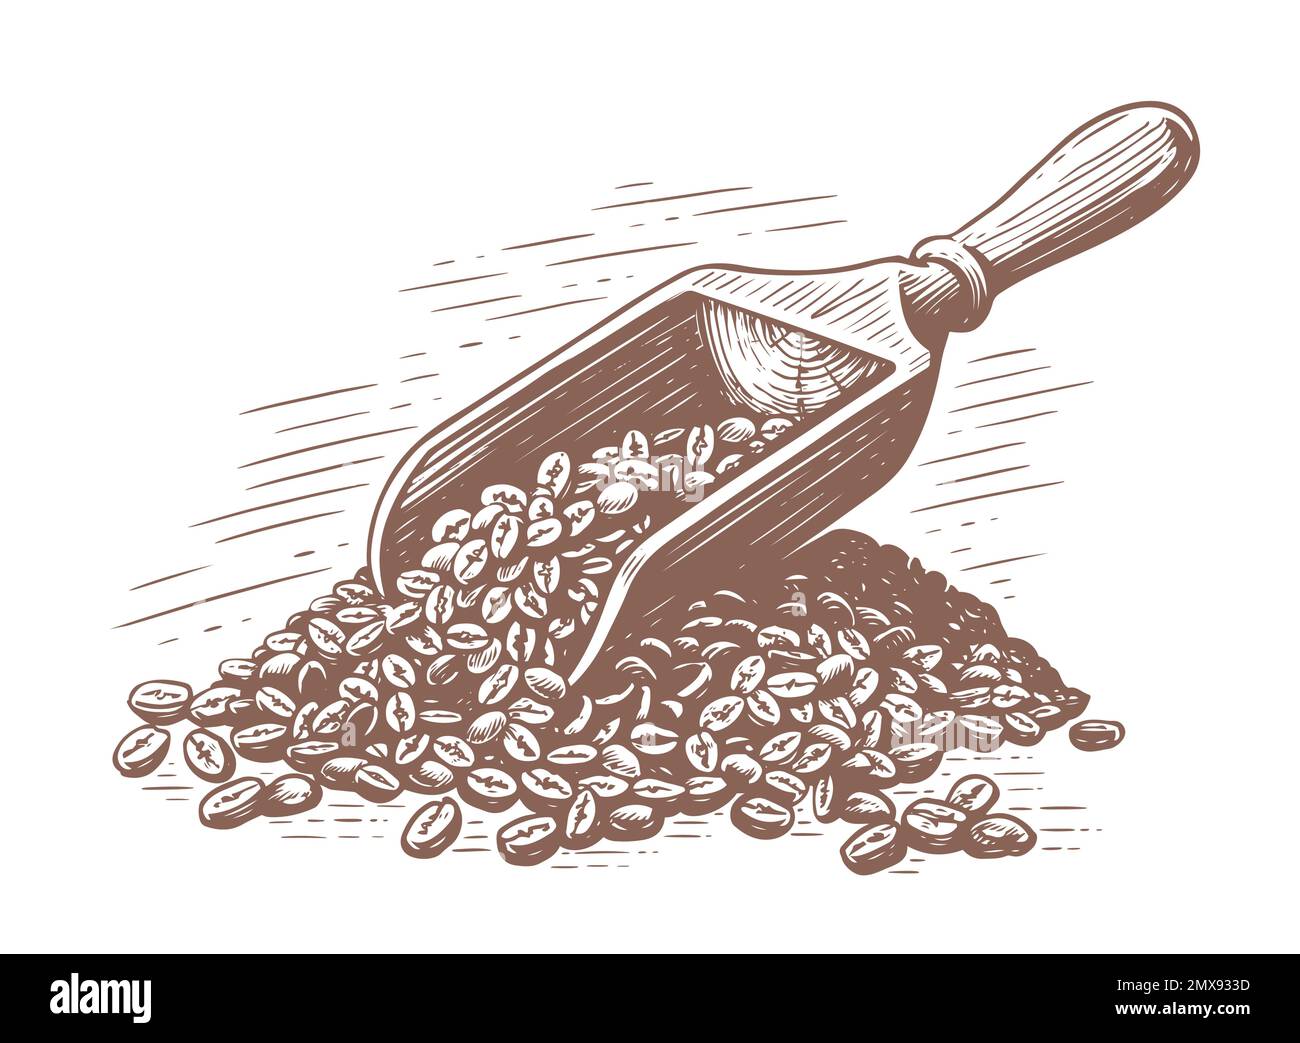 Körner gerösteten Kaffees mit einem Holzspachtel. Handgezeichnete Skizze Vintage-Vektordarstellung Stock Vektor